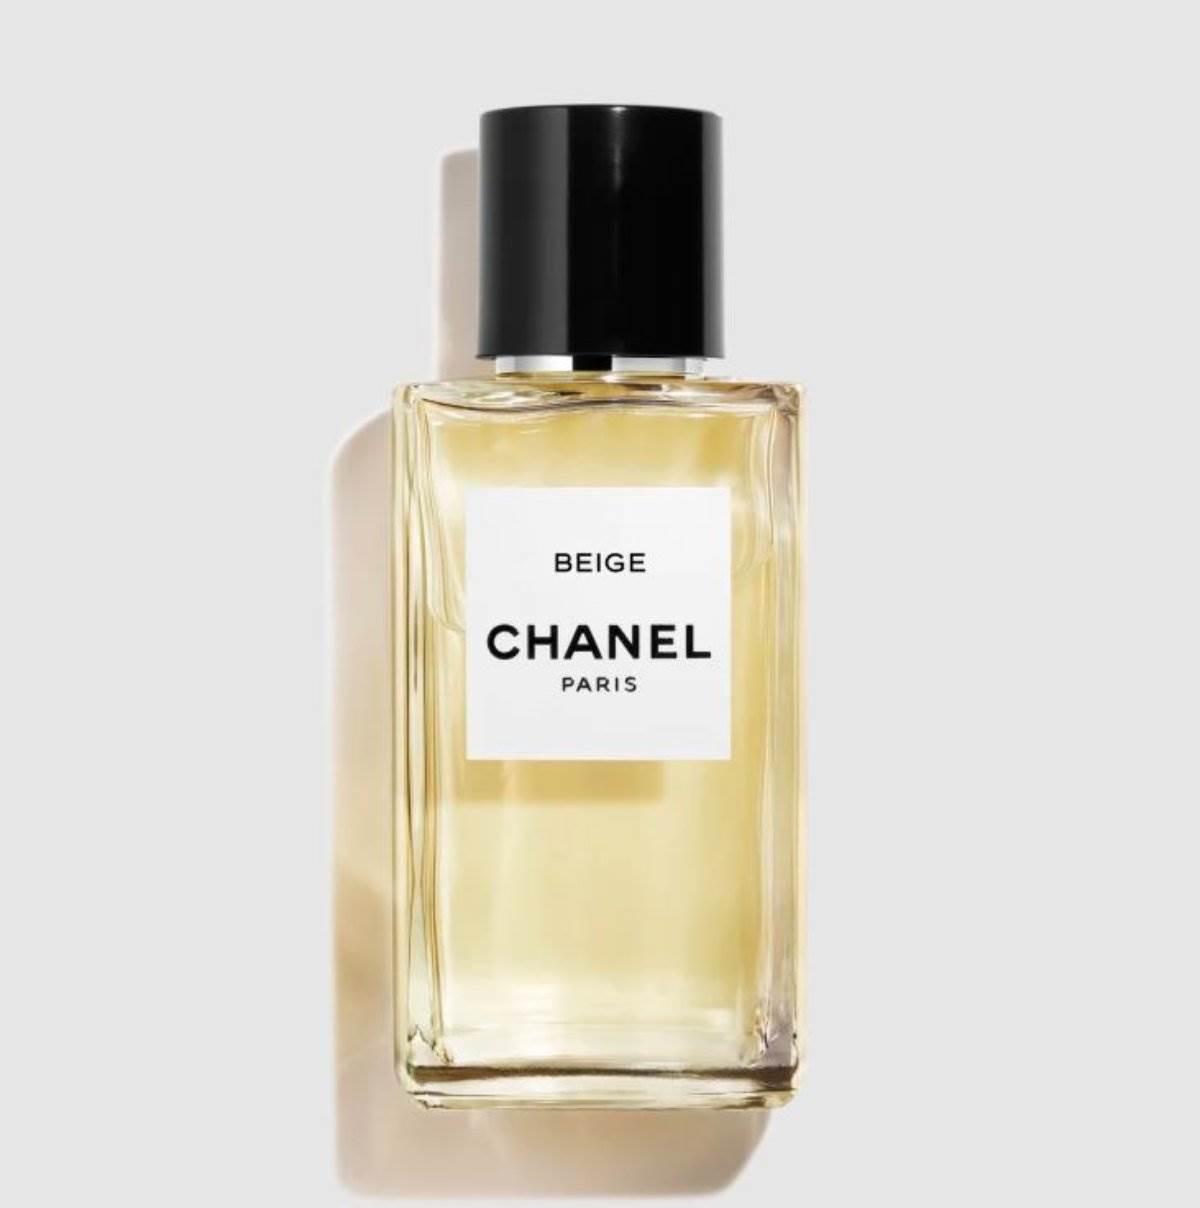  Chanel Beige je jedan od najlepših mirisnih nota. 